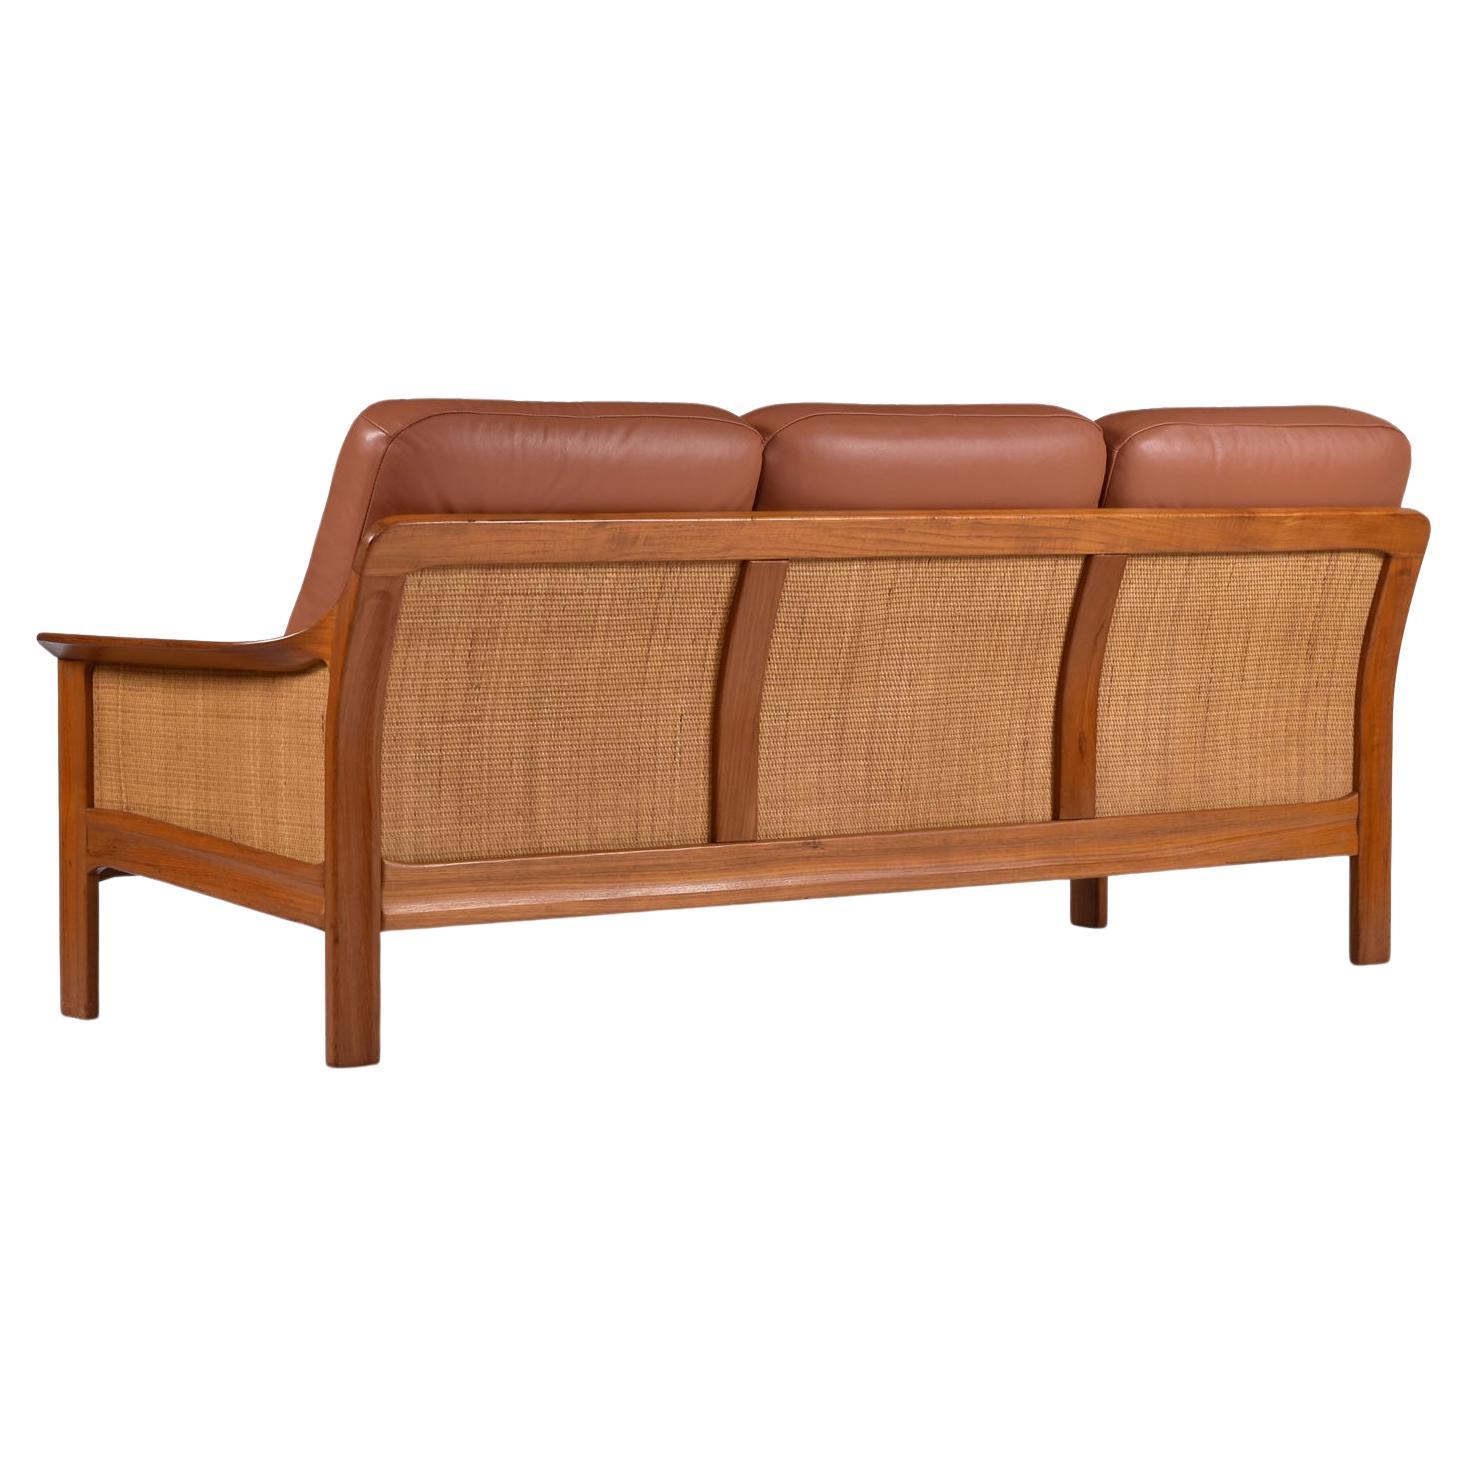 Dieses außergewöhnliche Vintage-Sofa (Ende der 1970er/Anfang der 1980er Jahre) aus massivem Teakholz hat ein unverwechselbares dänisches, modernes Design, könnte aber auch aus Kanada stammen, ohne dass der Hersteller angegeben ist. Das Sofa ist mit